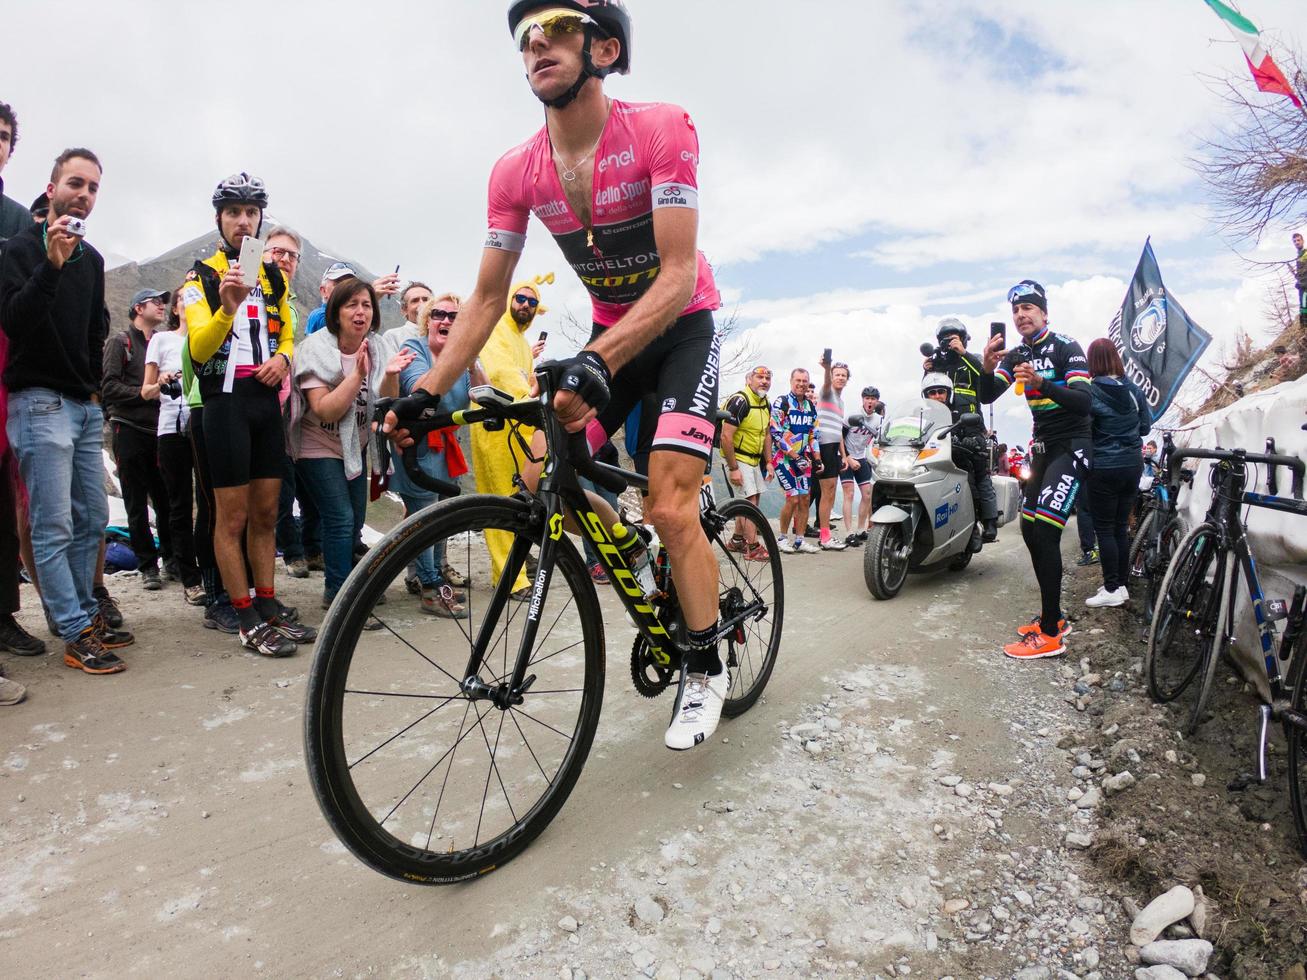 Piamonte, Italia 2018- los ciclistas suben cuesta arriba durante la carrera ciclista internacional giro d'italia foto